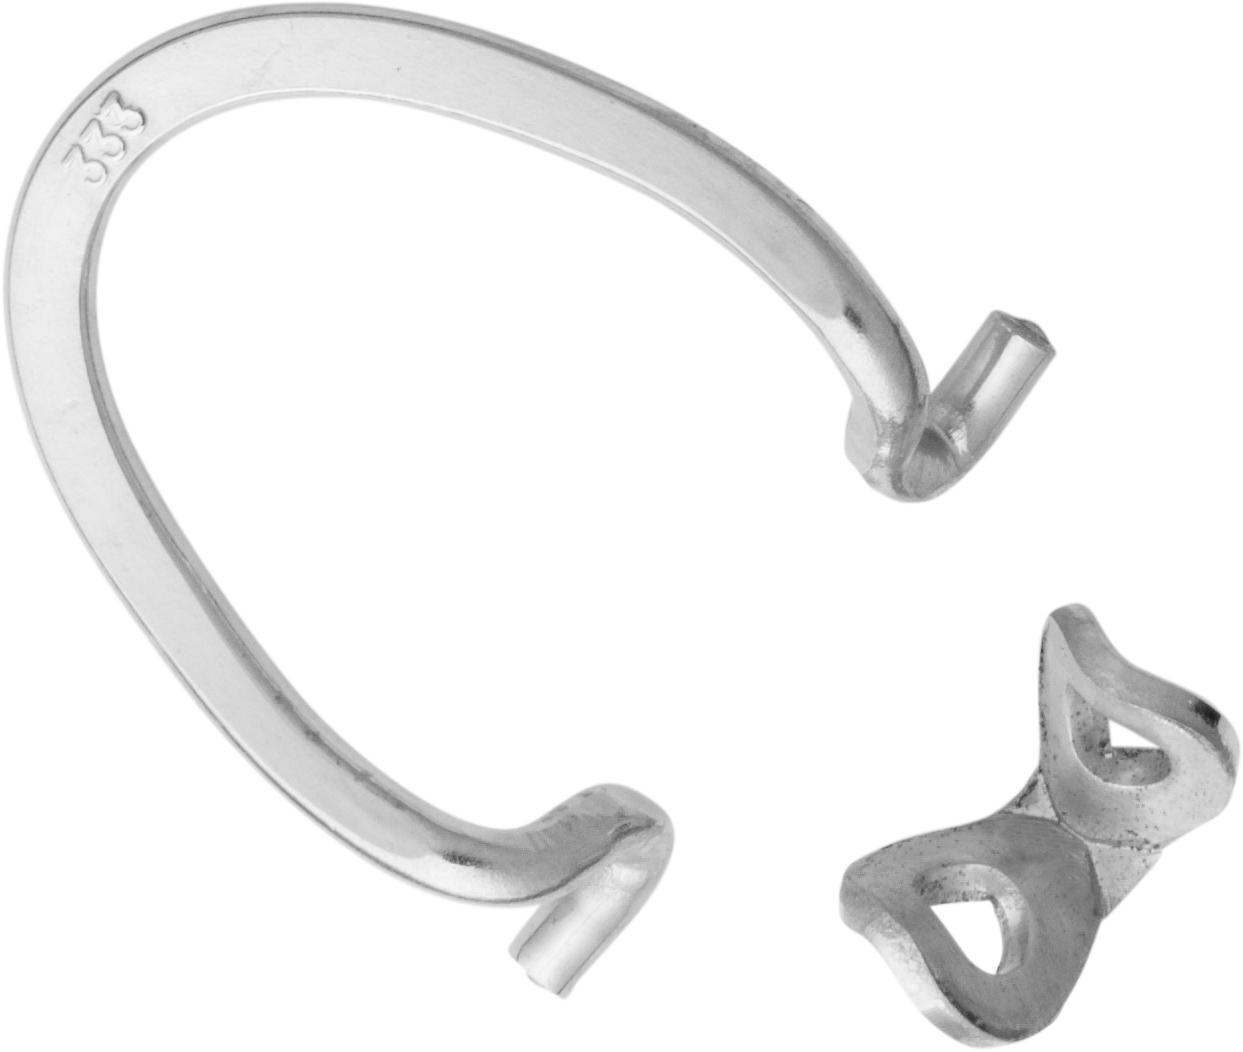 Ear clip mechanism pierced silver 925/- length 13.50mm